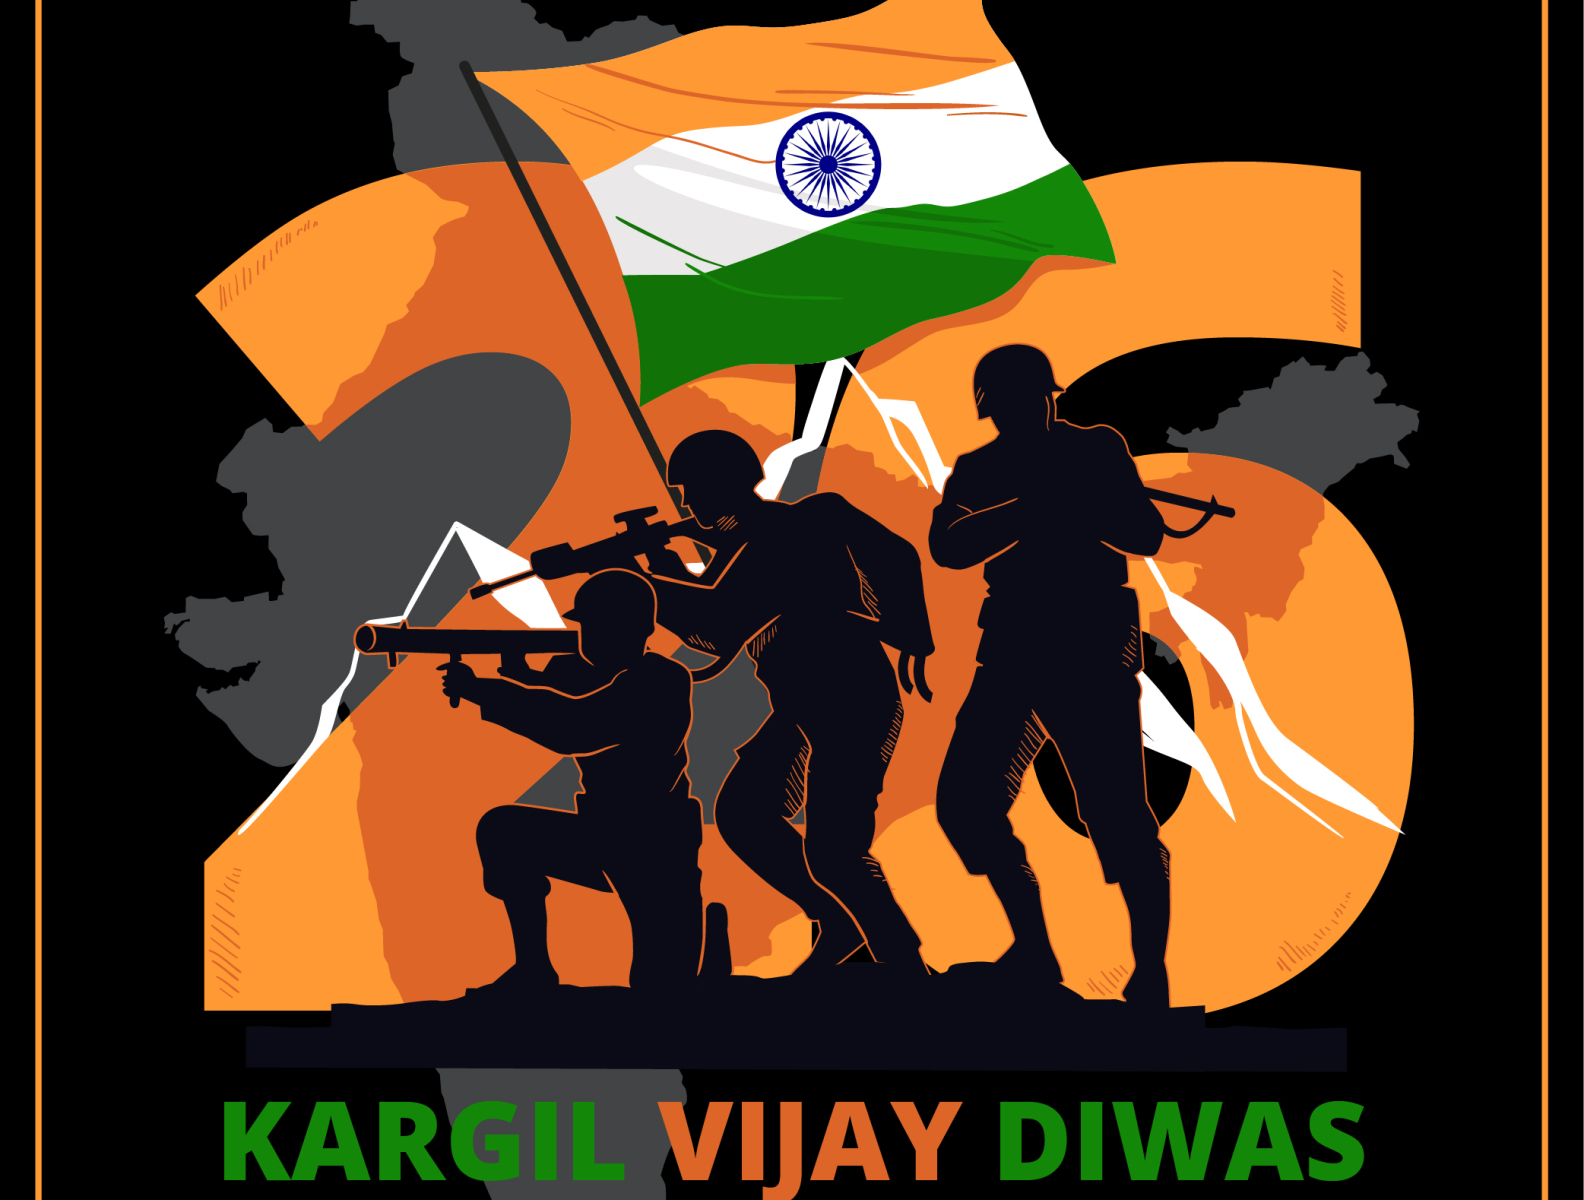 कारगिल विजय दिवस पर चित्र /Kargil Vijay Diwas Drawing /How to Draw Kargil  Vijay Diwas Poster Drawing - YouTube